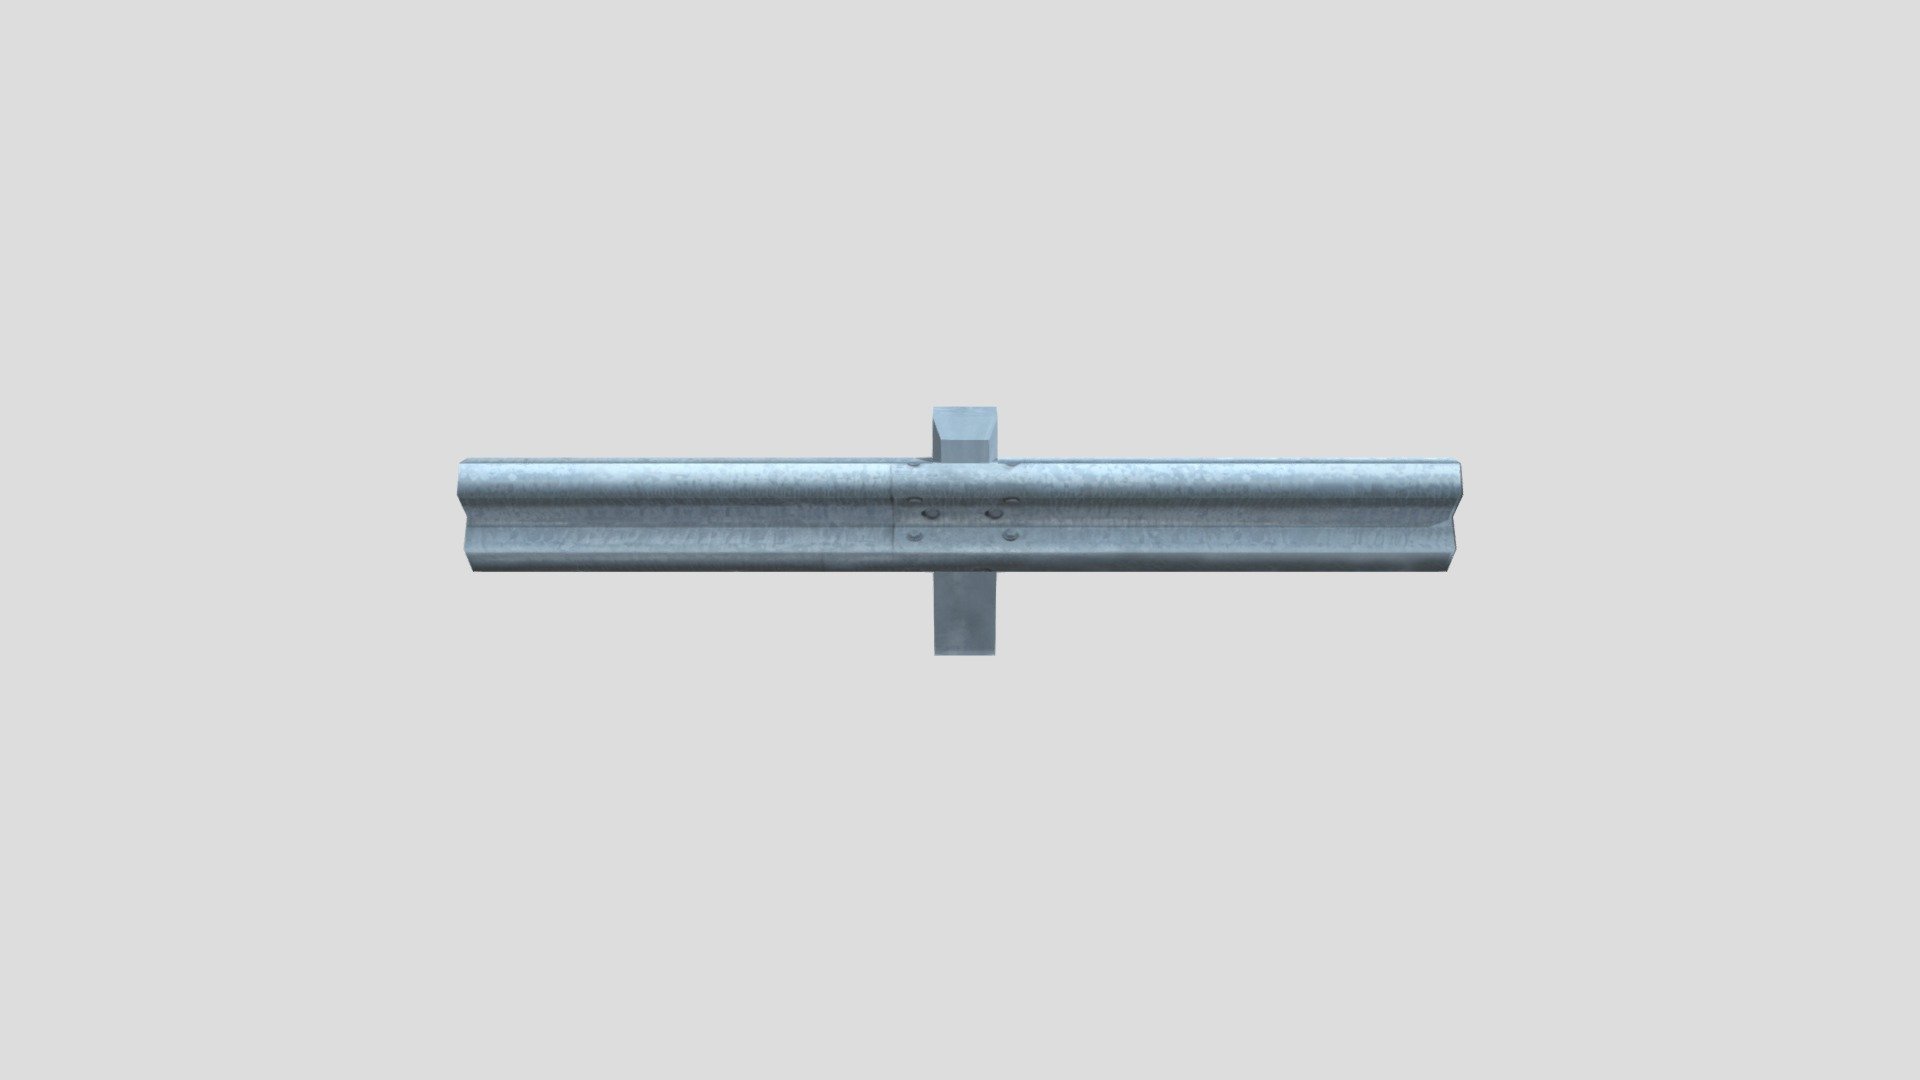 Metal Road Barrier - 3D model by zackjones 3d model